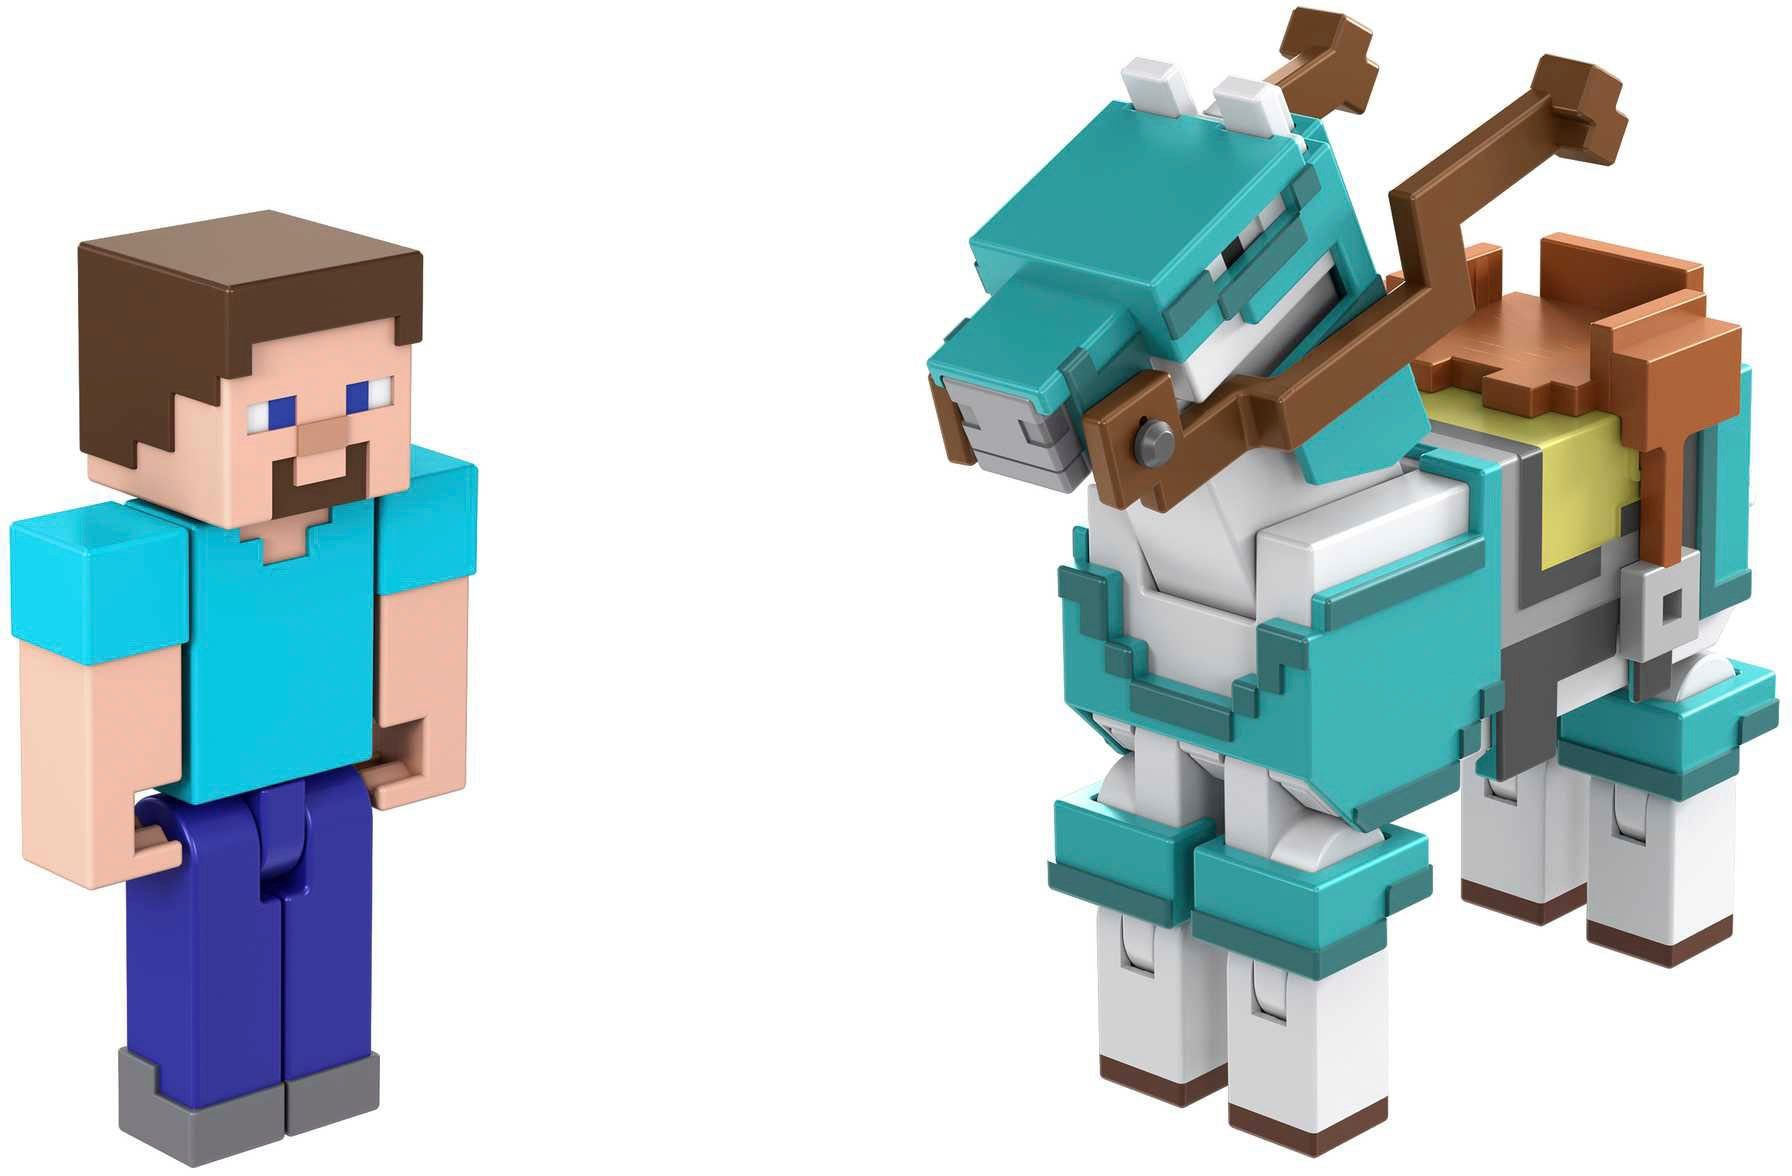 Spielfigur Horse Steve and Minecraft, Mattel® Armored